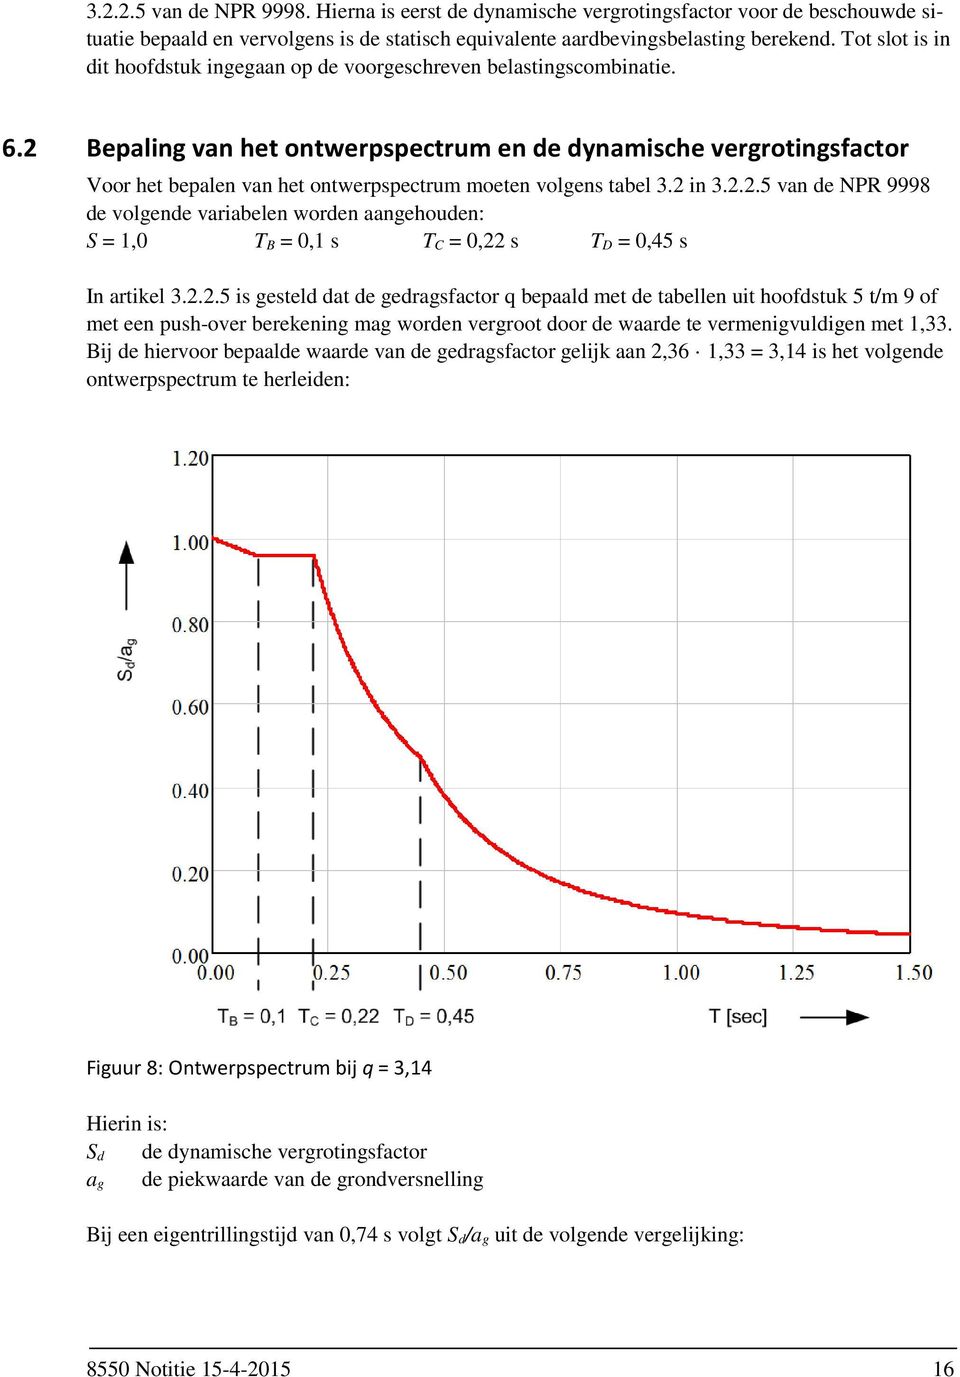 2 Bepaling van het ontwerpspectrum en de dynamische vergrotingsfactor Voor het bepalen van het ontwerpspectrum moeten volgens tabel 3.2 in 3.2.2.5 van de NPR 9998 de volgende variabelen worden aangehouden: S = 1,0 T B = 0,1 s T C = 0,22 s T D = 0,45 s In artikel 3.